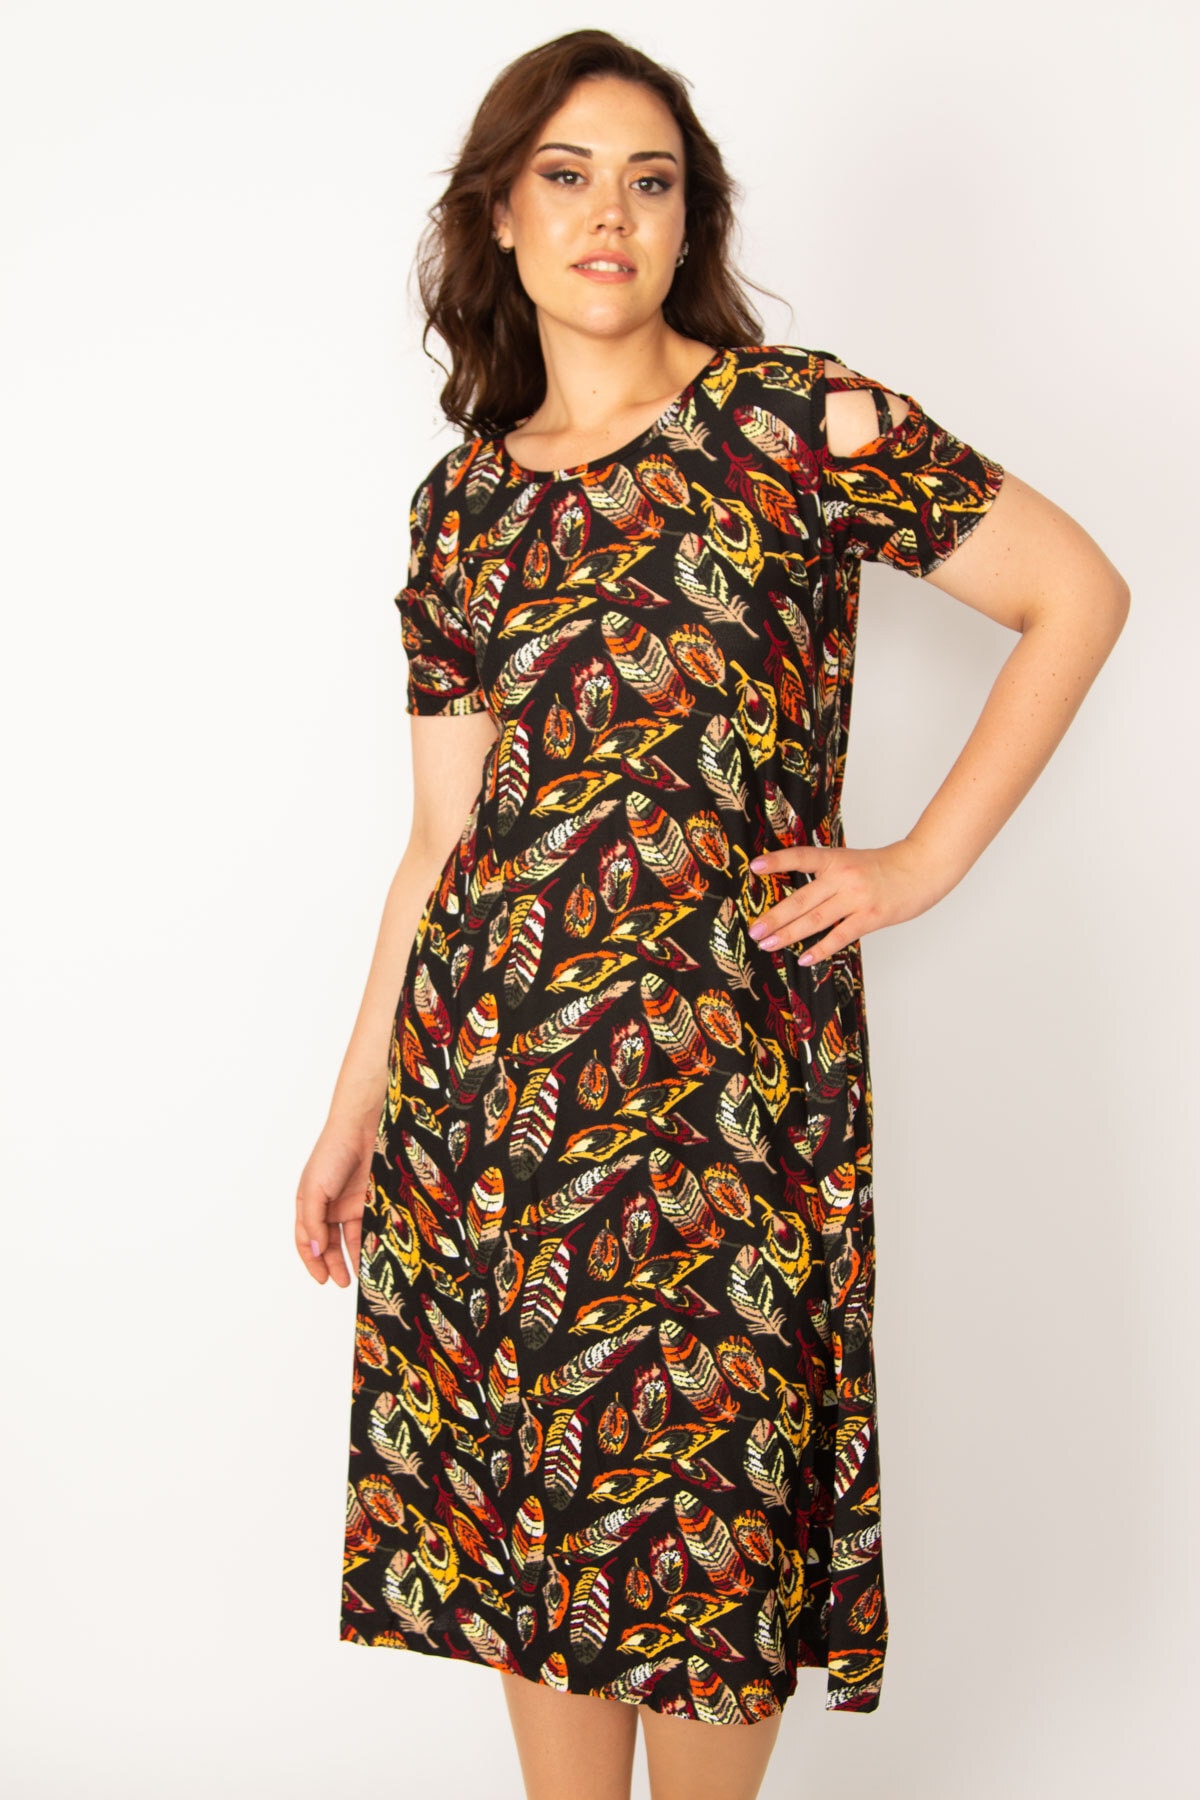 Levně Şans Women's Plus Size Multicolored Floral Patterned Dress with Decollete